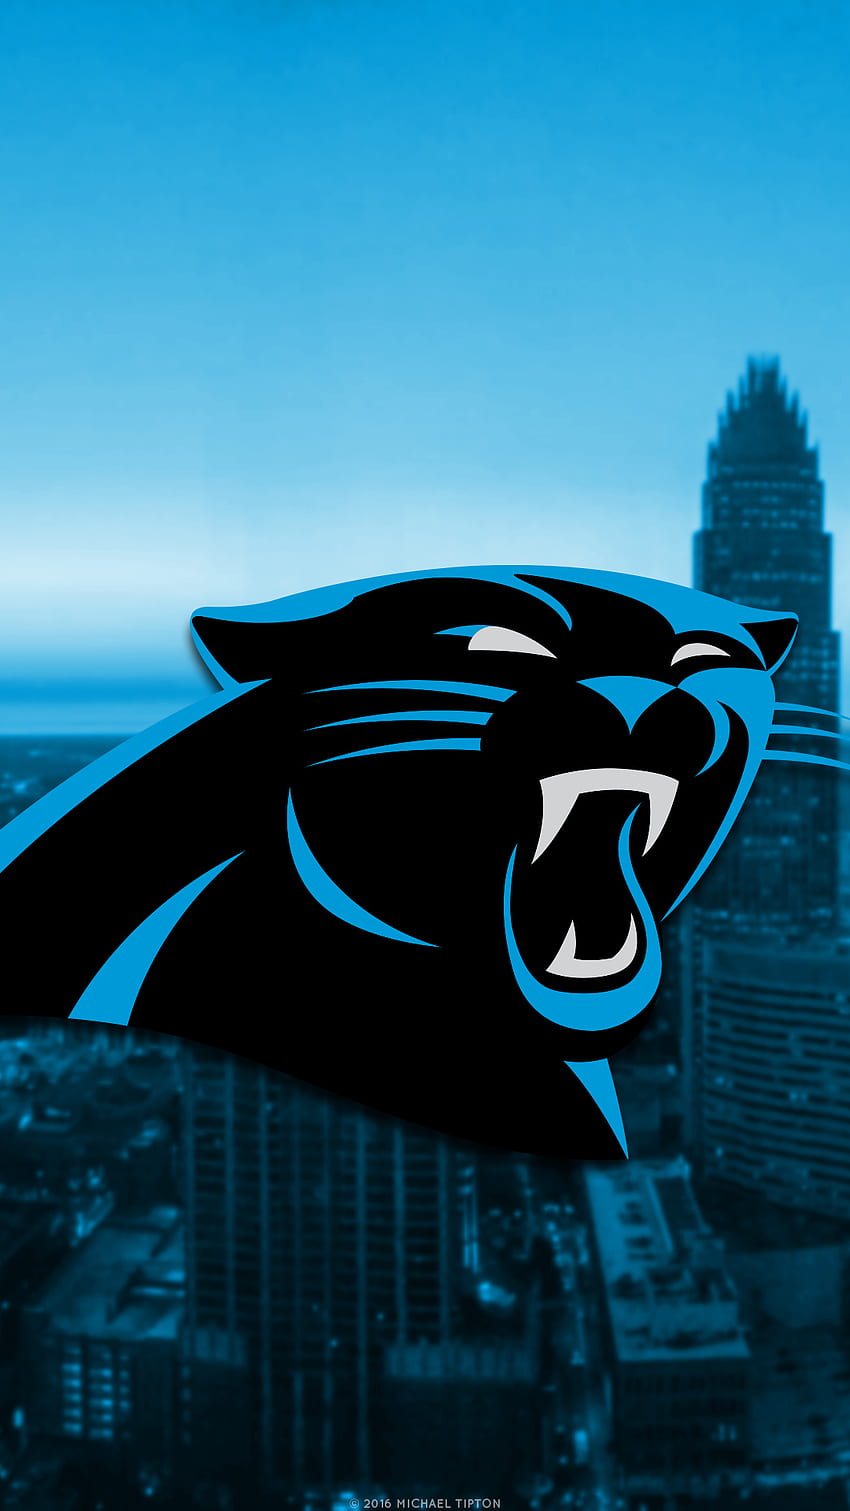 Gilbert R Johnson on Twitter  Carolina panthers Panthers Carolina  panthers football